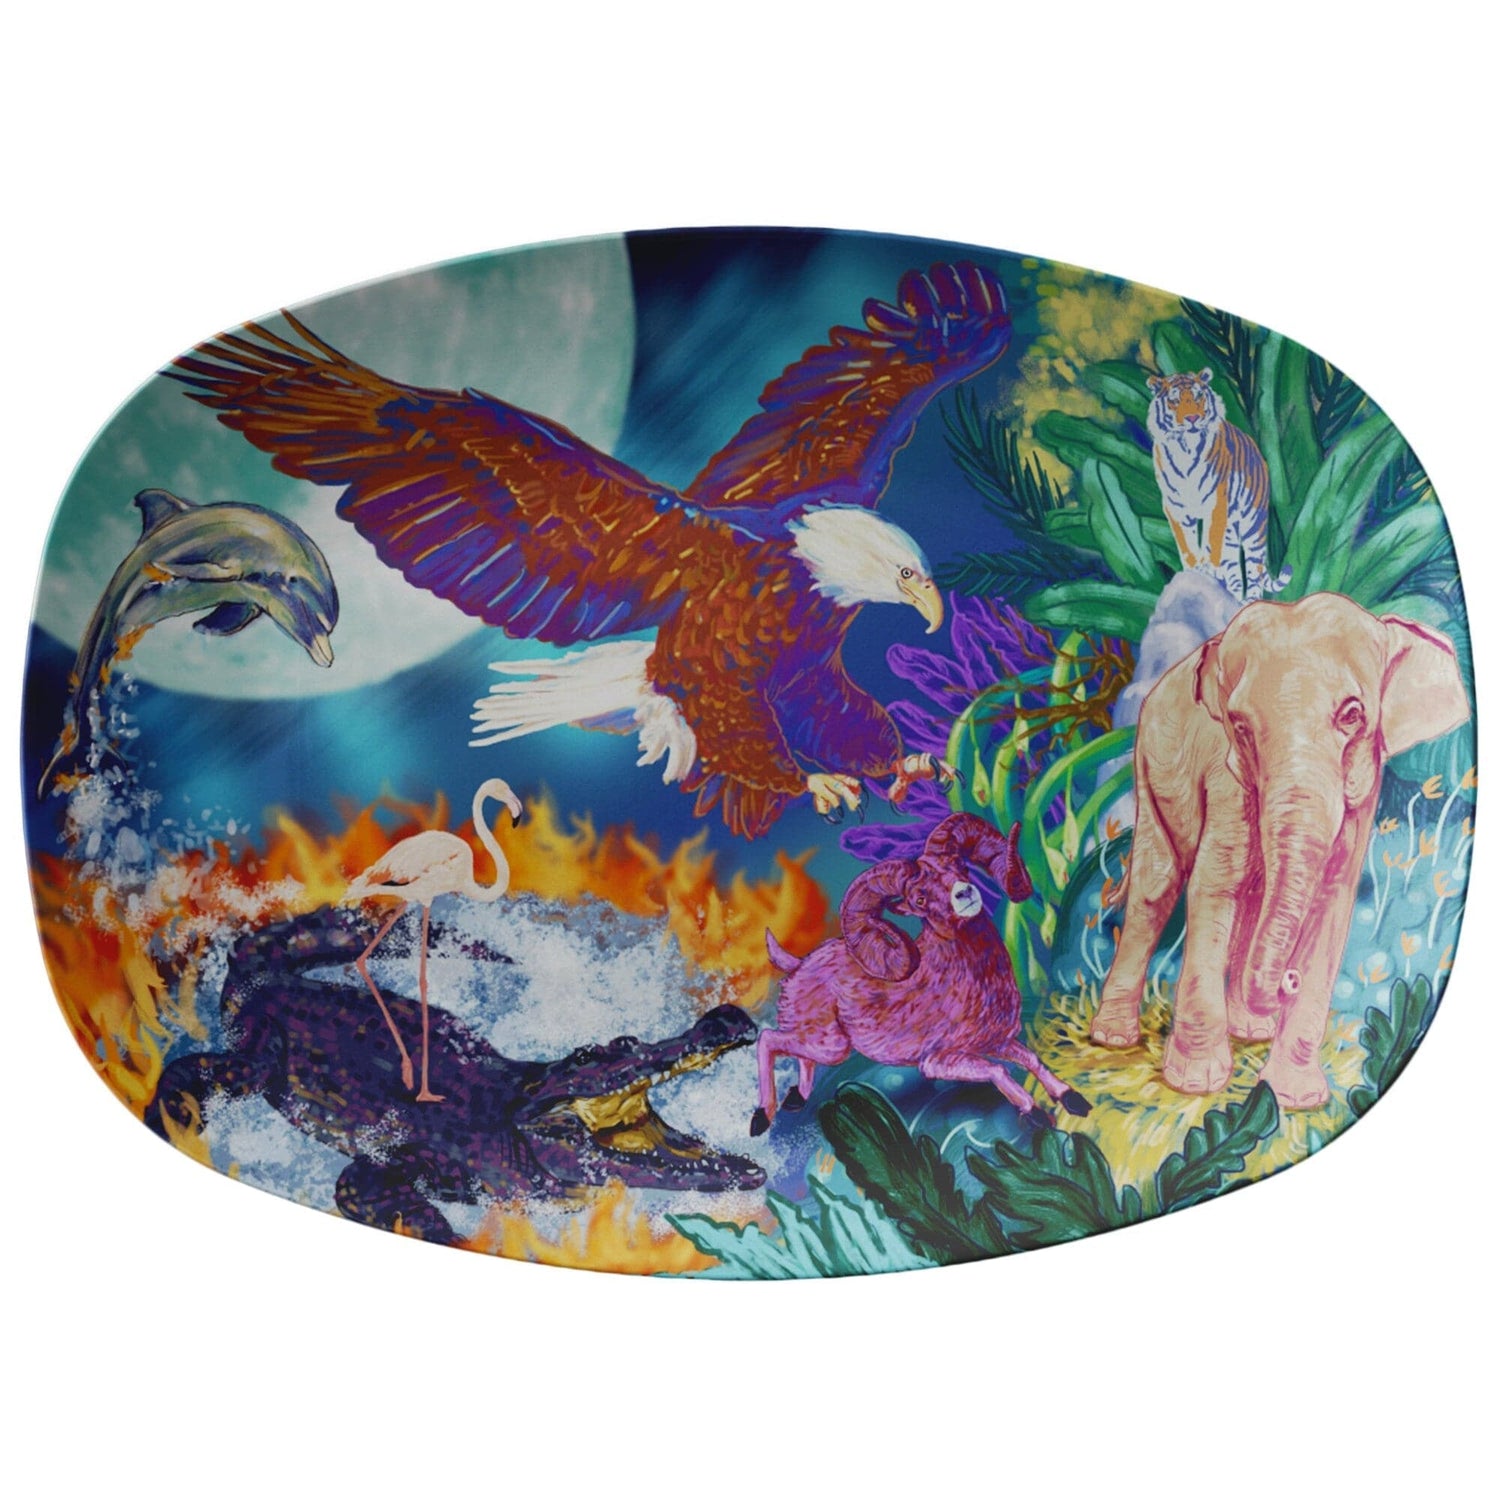 Kate McEnroe New York Serving Platter in Wildlife Fantasy Art Serving Platters 9727